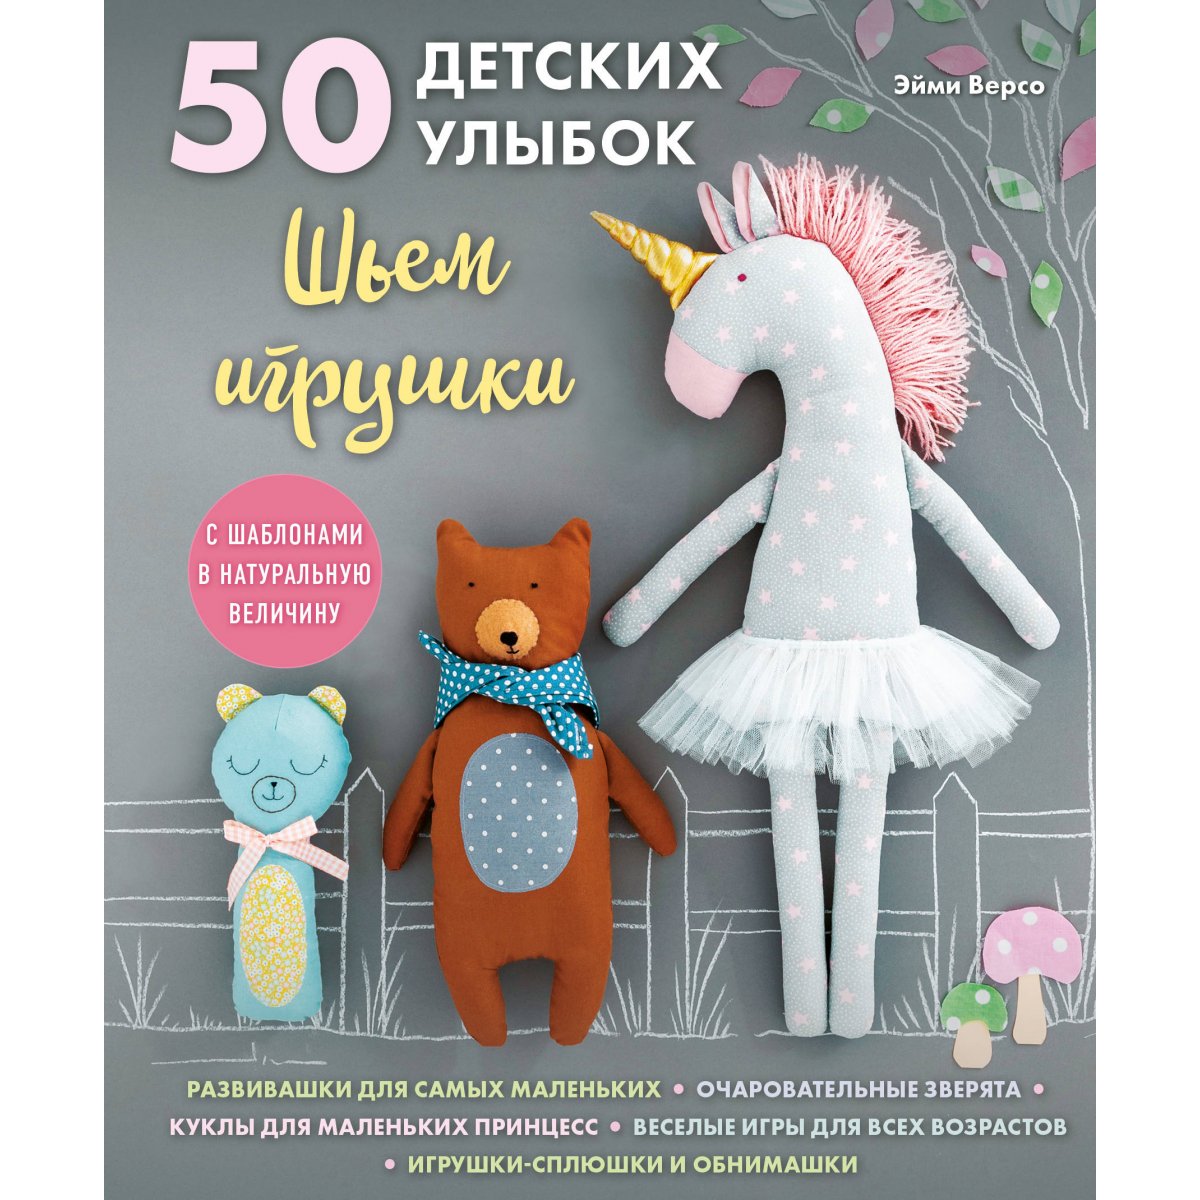 Купить книги по рукоделию и для досуга в интернет магазине steklorez69.ru | Страница 15